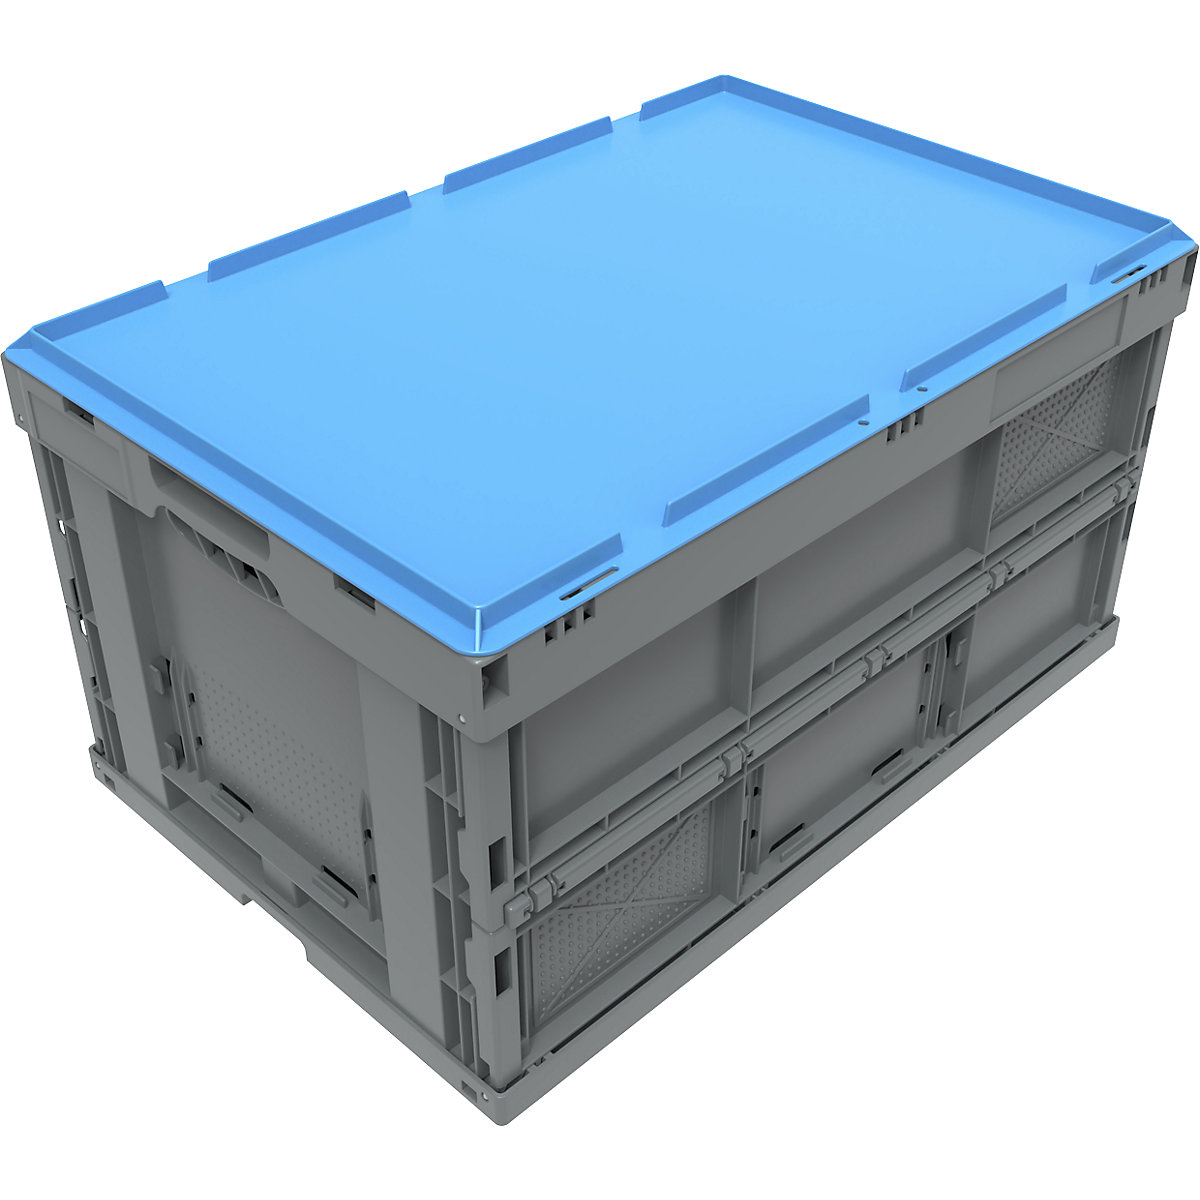 Poklopac za polaganje za sklopivu kutiju, u plavoj boji (Prikaz proizvoda 3)-2